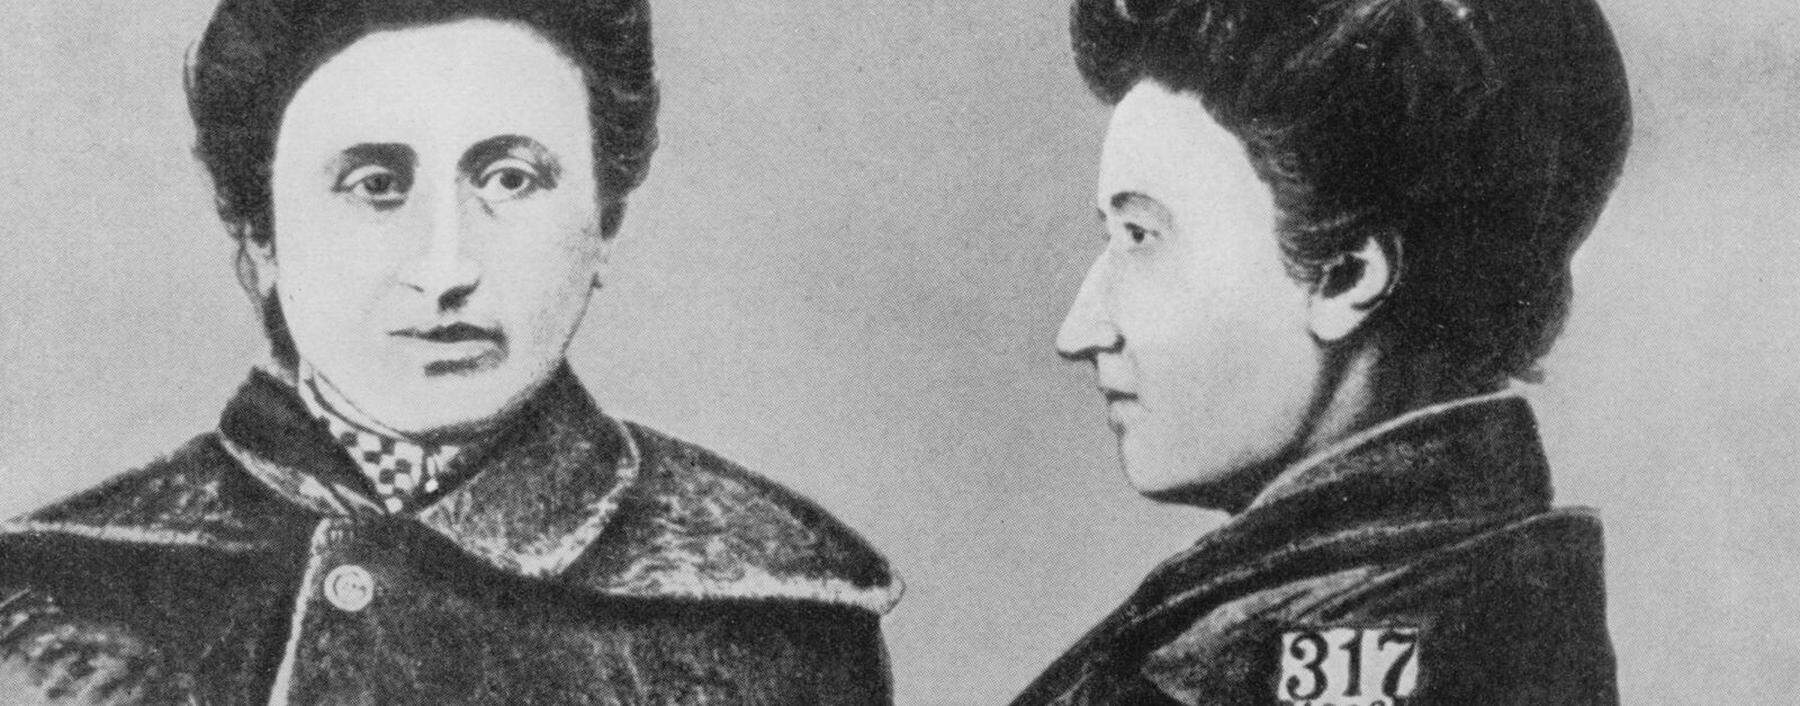 Erkennungsdienstliche Aufnahme von Rosa Luxemburg (1871 bis 1919), Warschauer Polizeigefängnis 1906. 